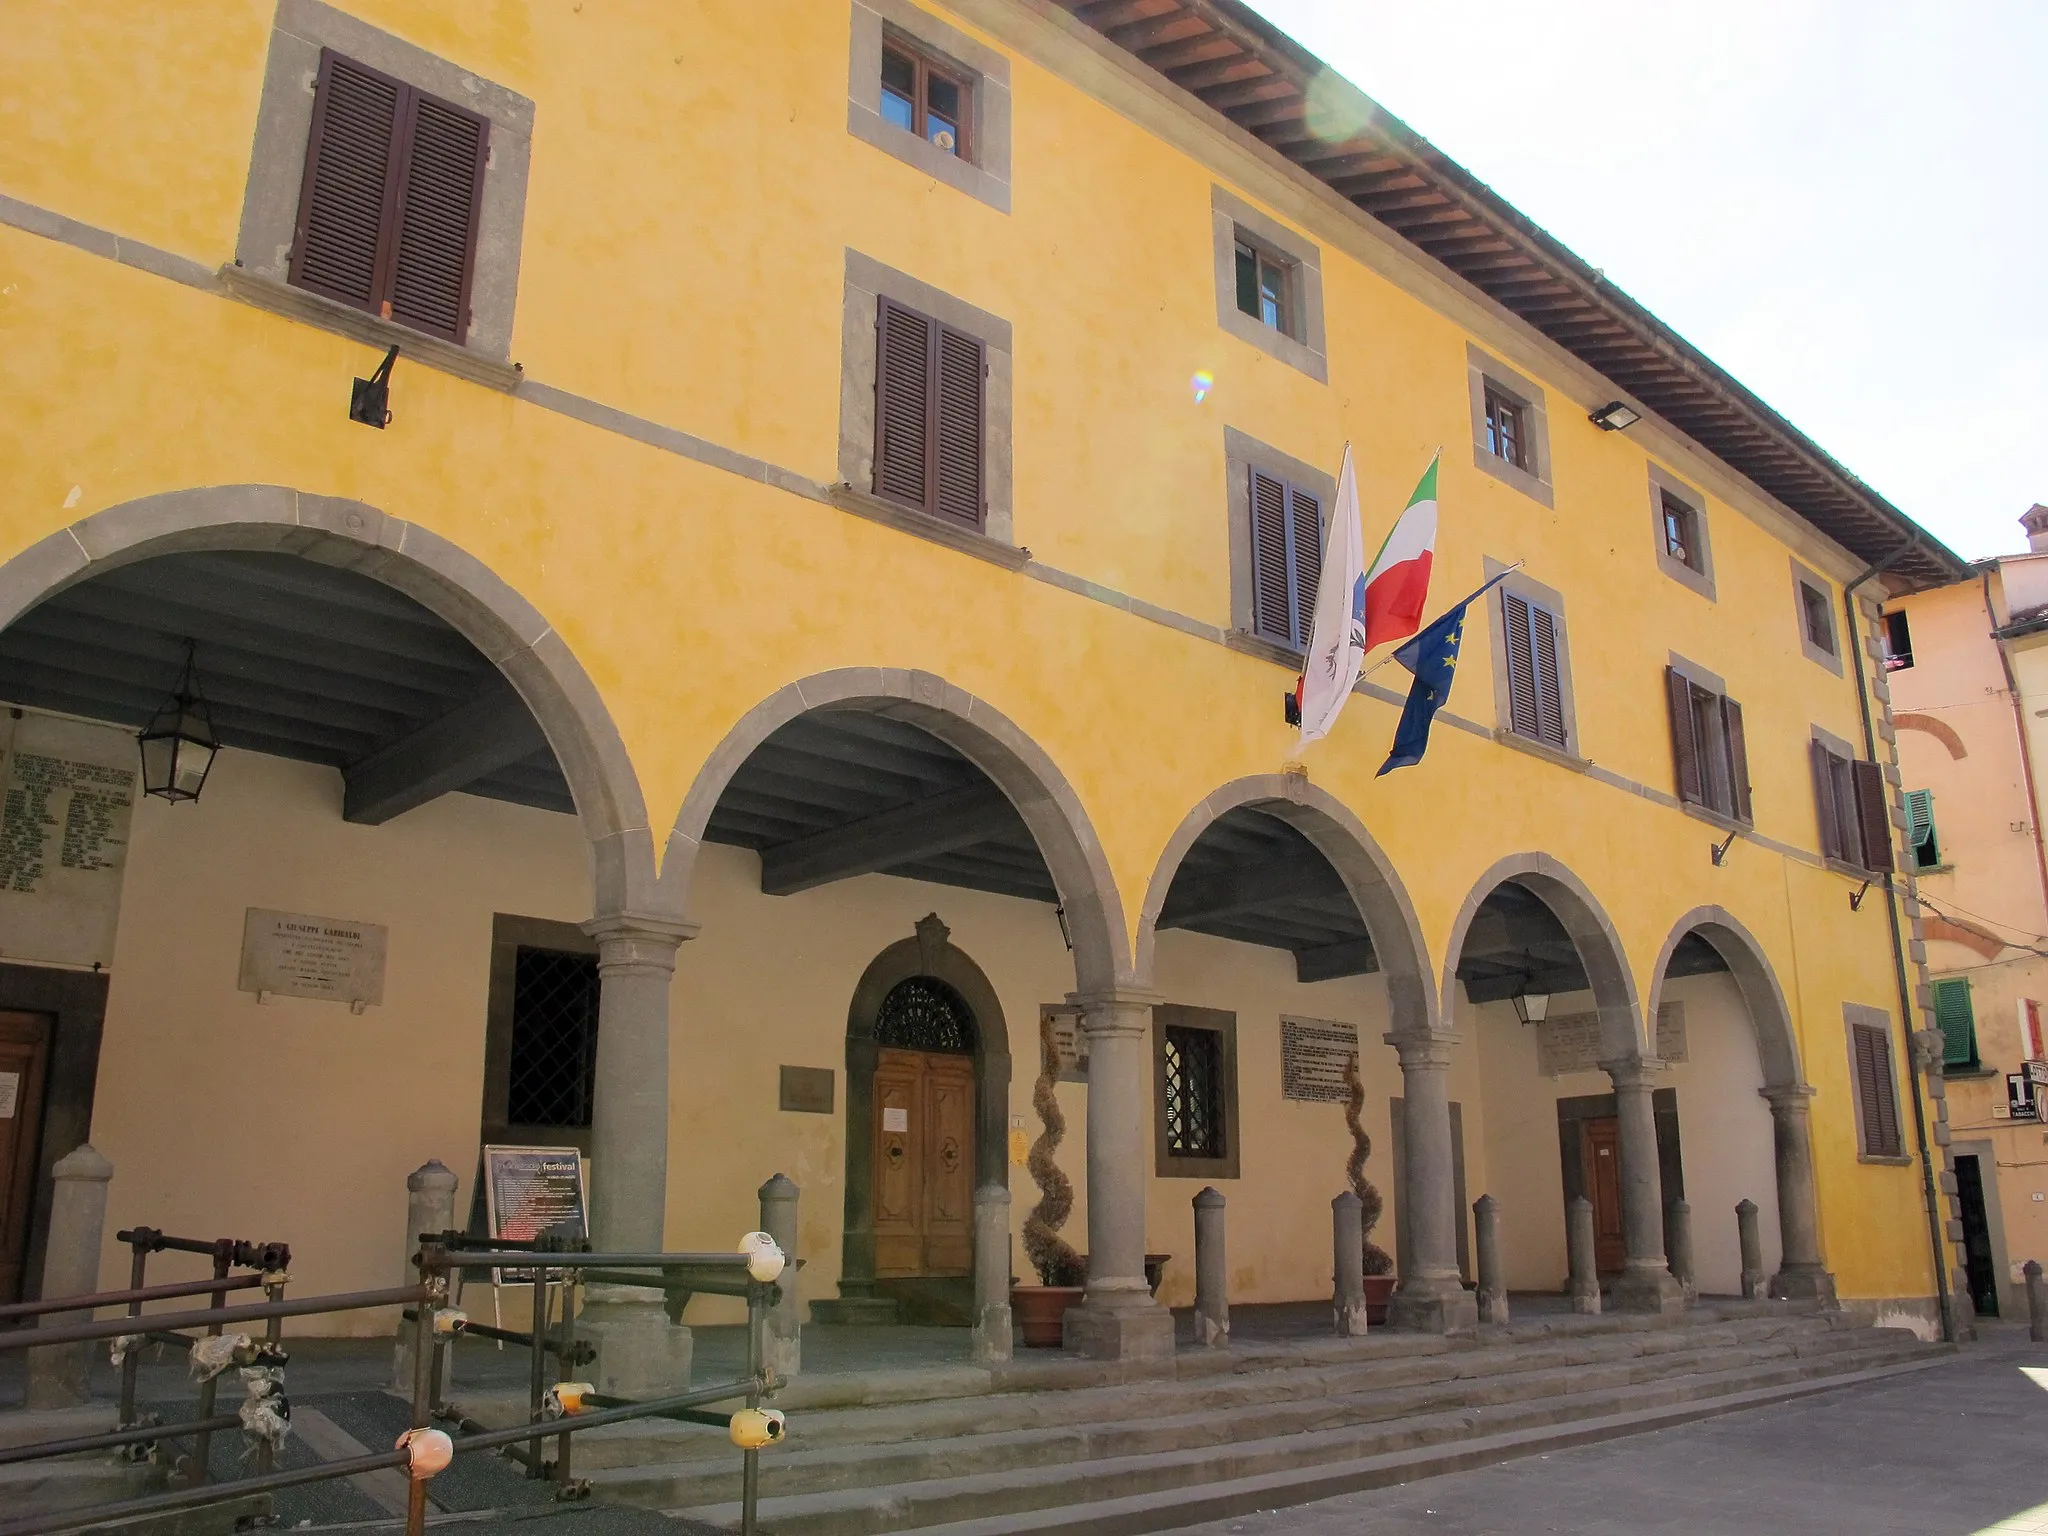 Image of Castelfranco di Sotto